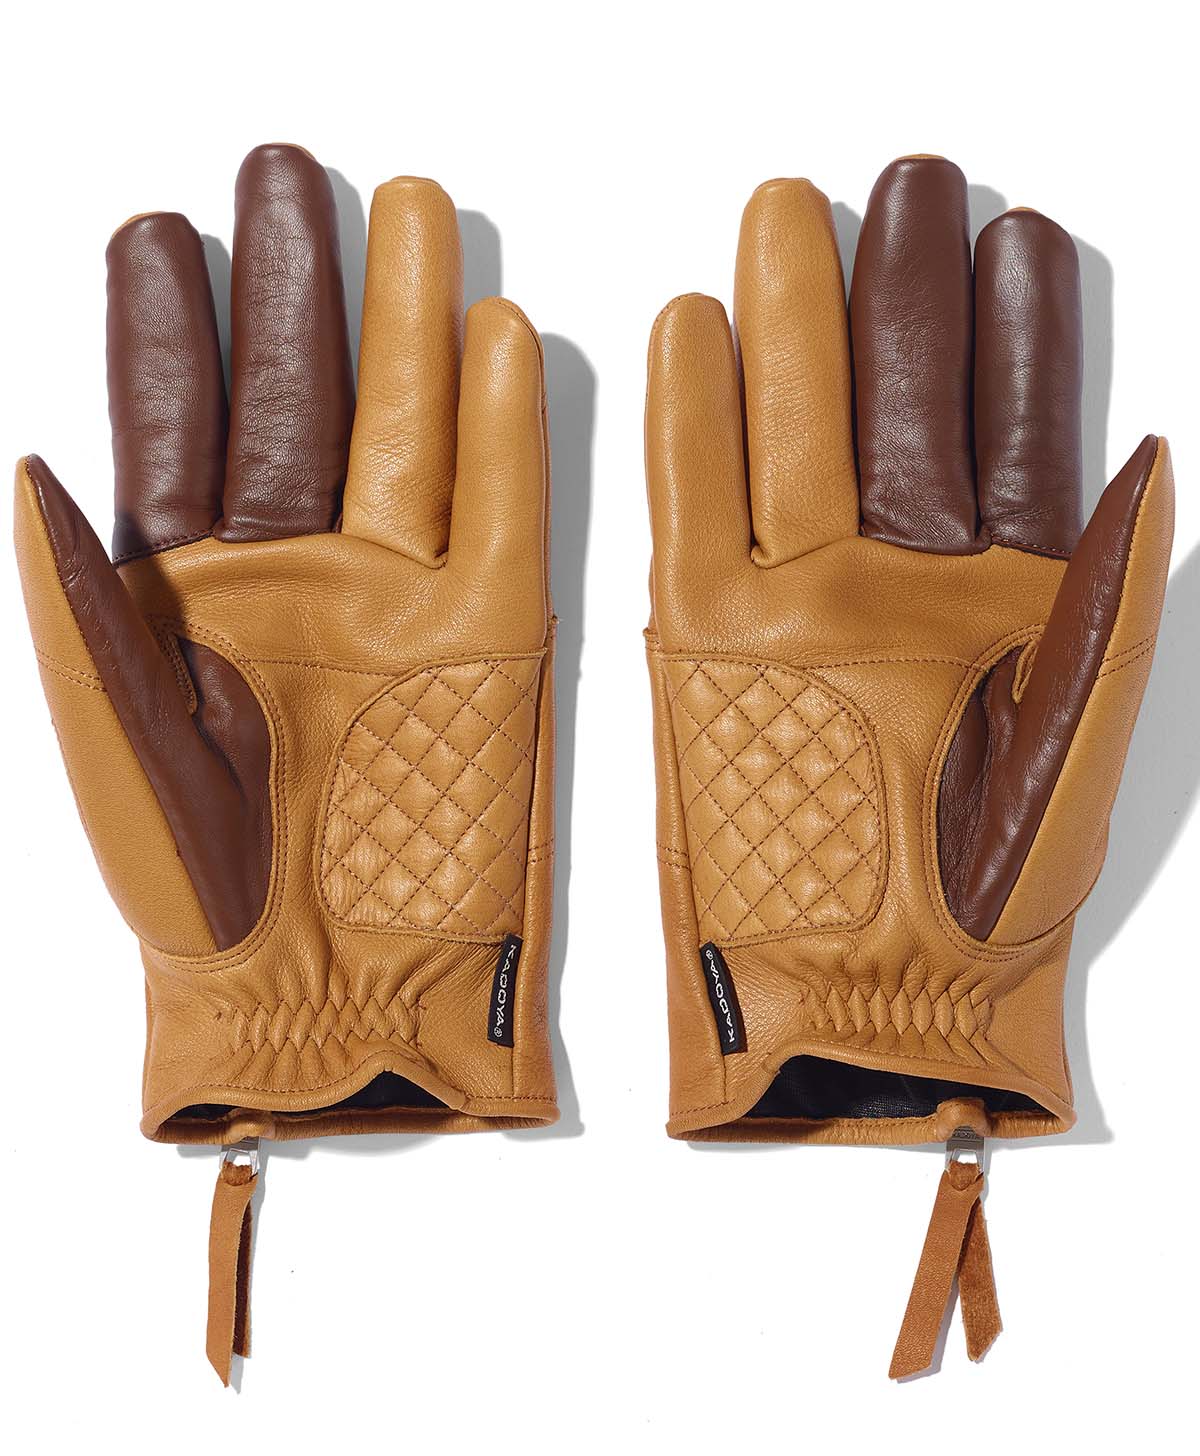 Rox Glove / Brown (donne)